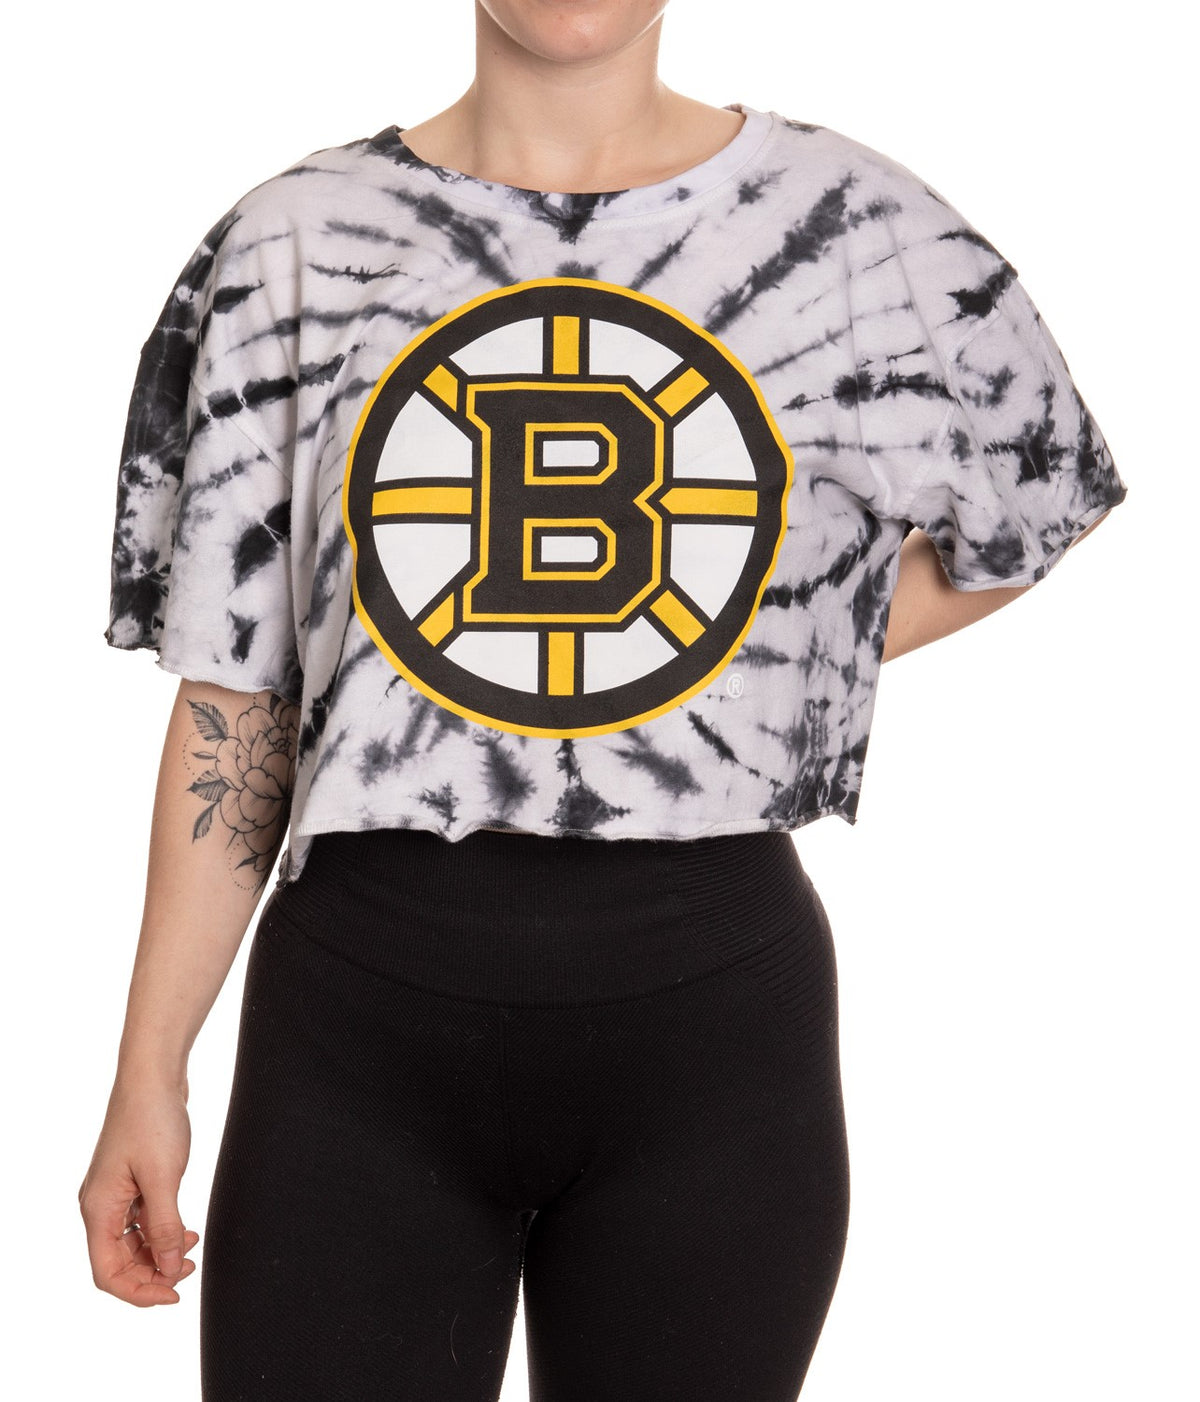 Boston Bruins Spiral Tie Dye Crop Top Front View